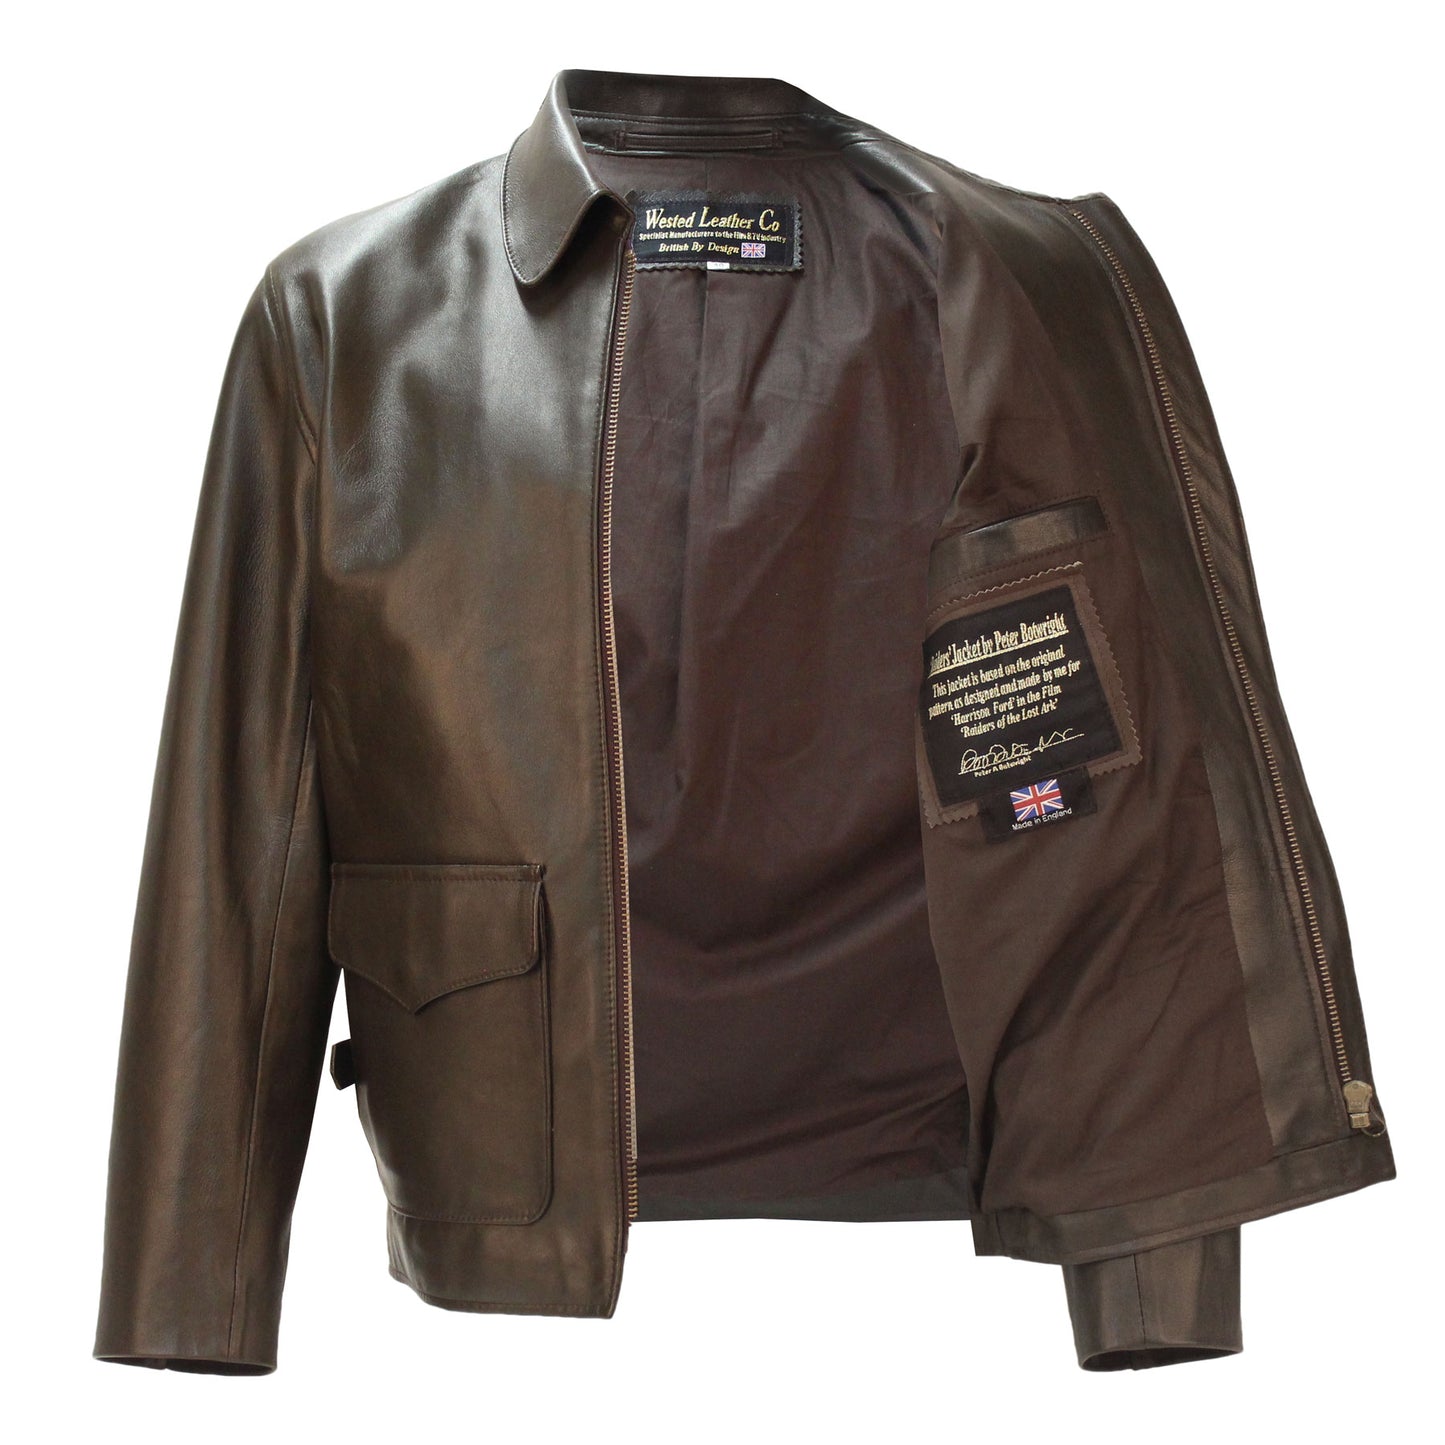 Raiders of Lost Ark Leather Jacket in Brown Lambskin